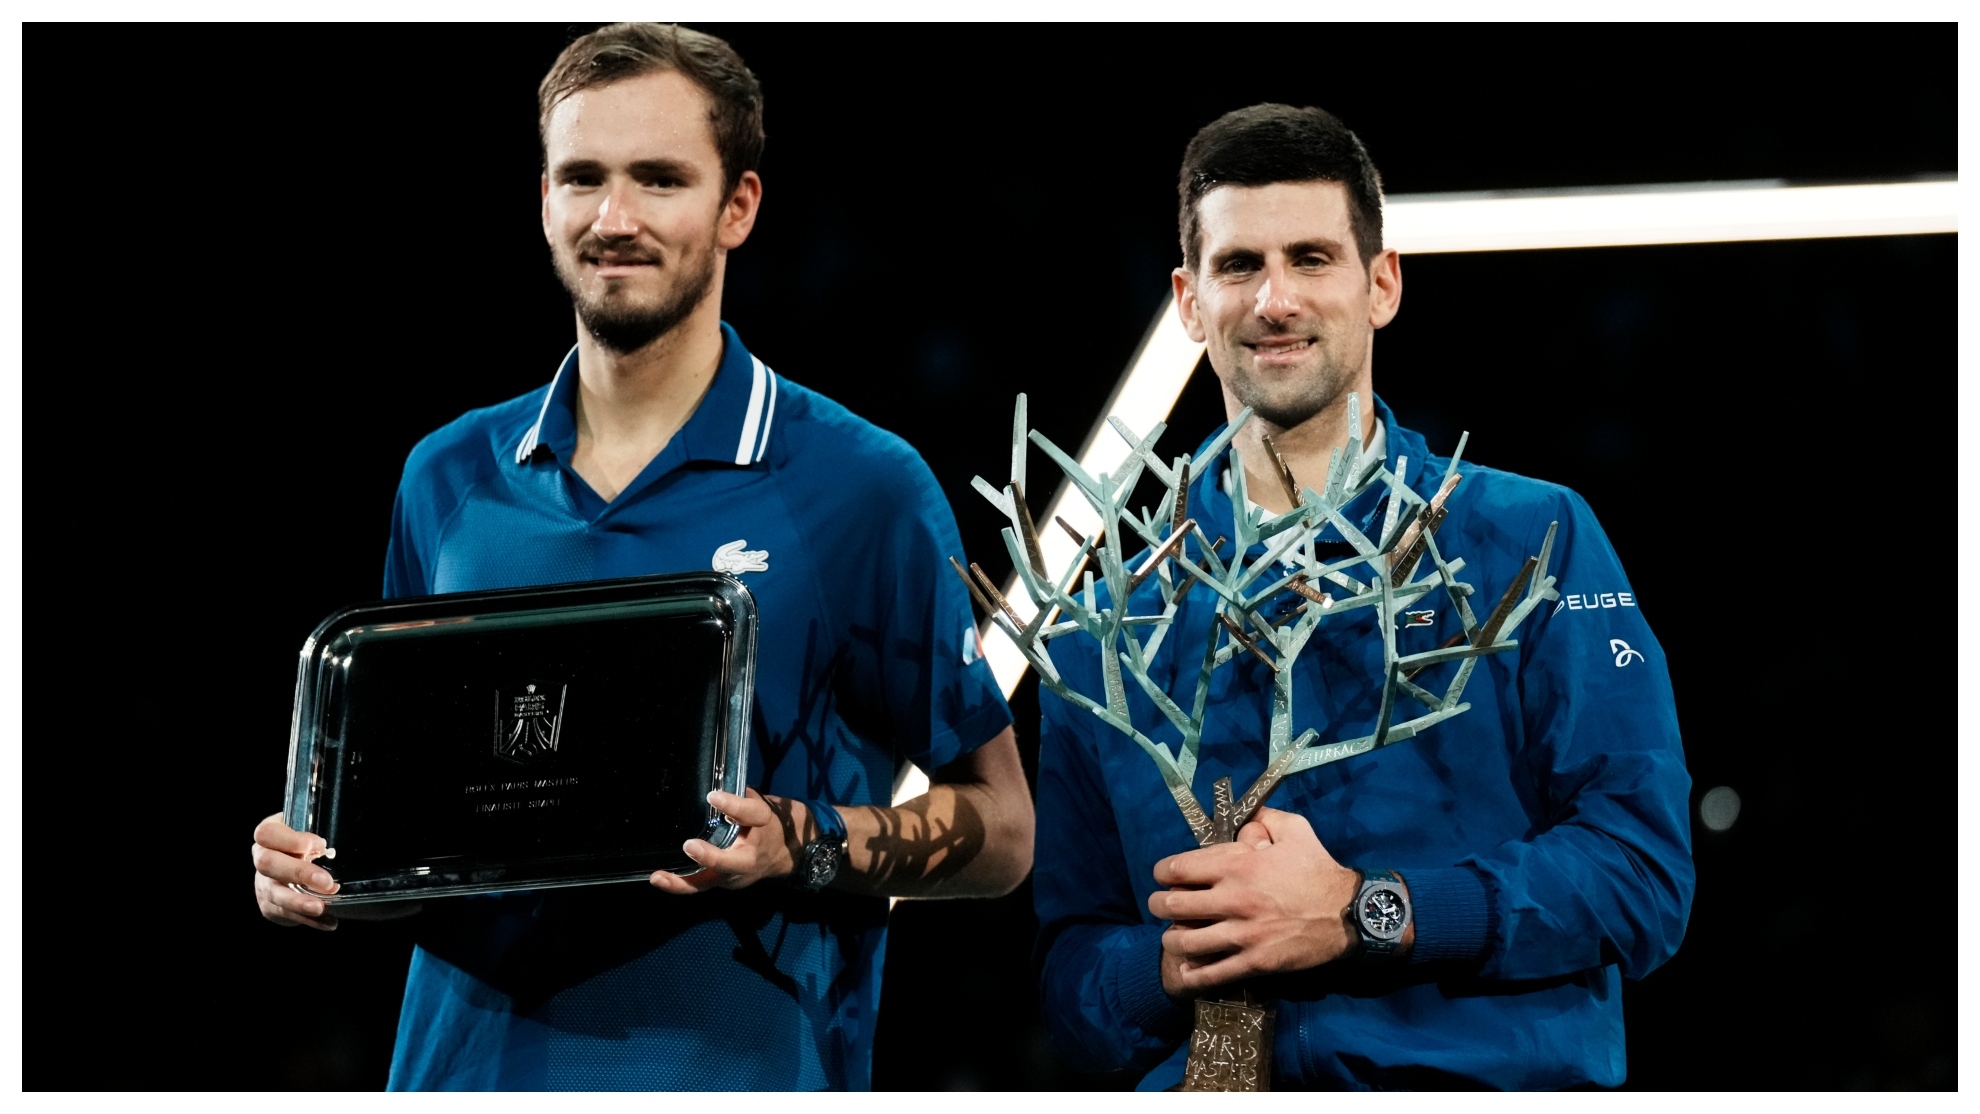 Medvedev, finalista, y Djokovic, campeón de Bercy